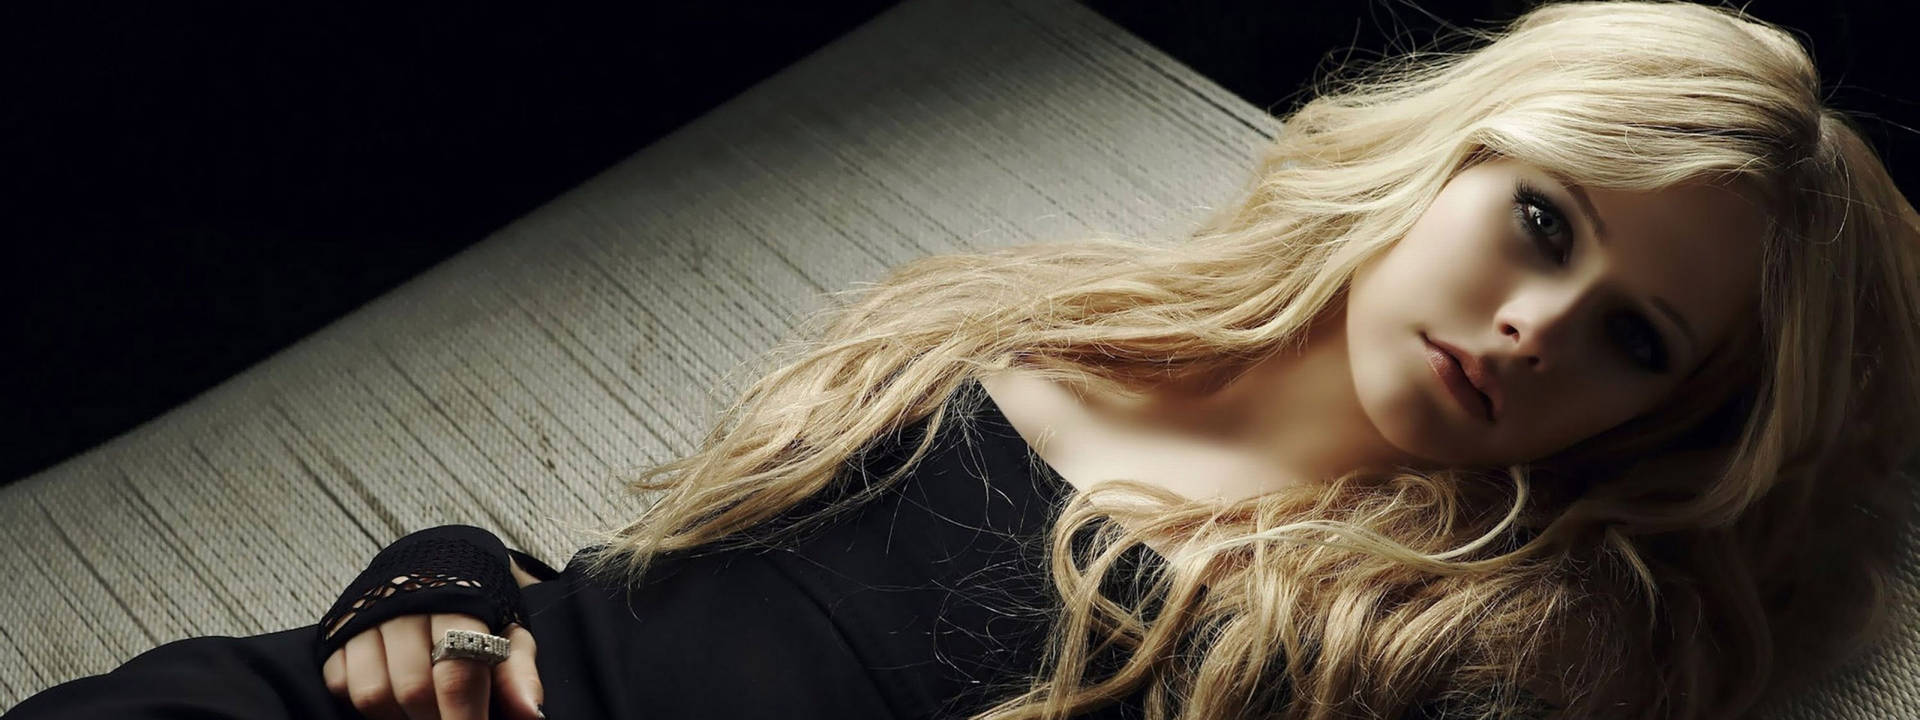 Vackerblonda Avril Lavigne. Wallpaper